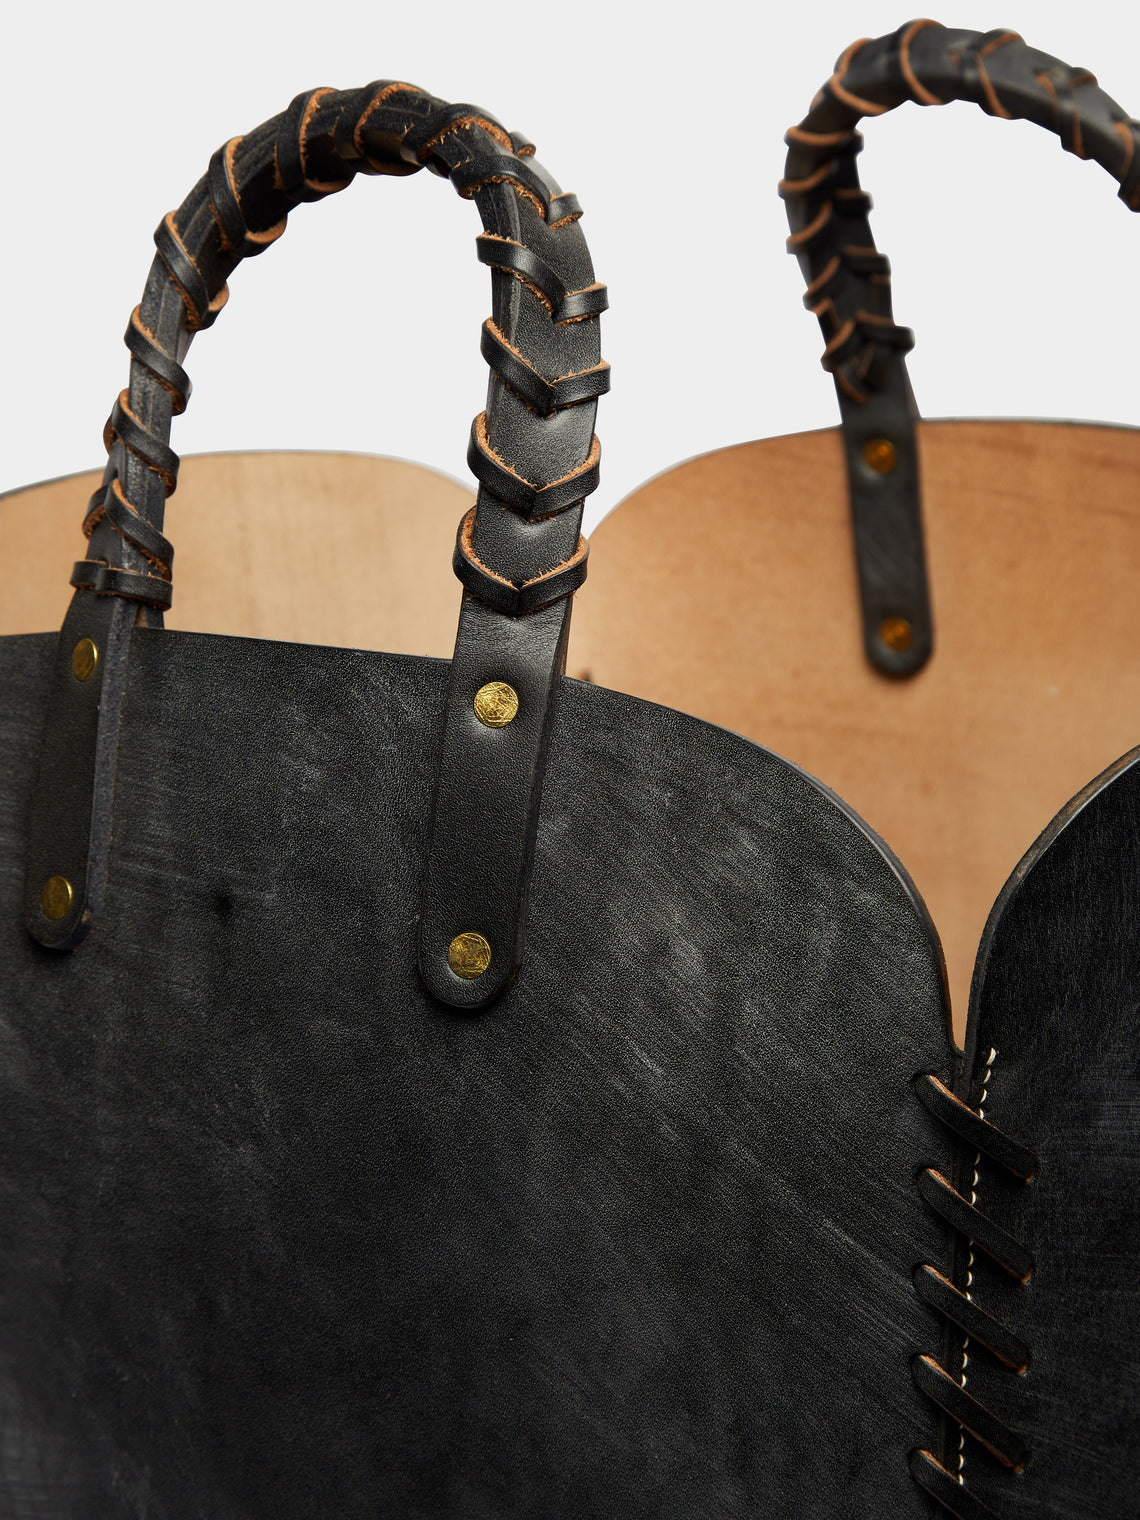 Otis Ingrams - Woven Leather Basket - Black - ABASK